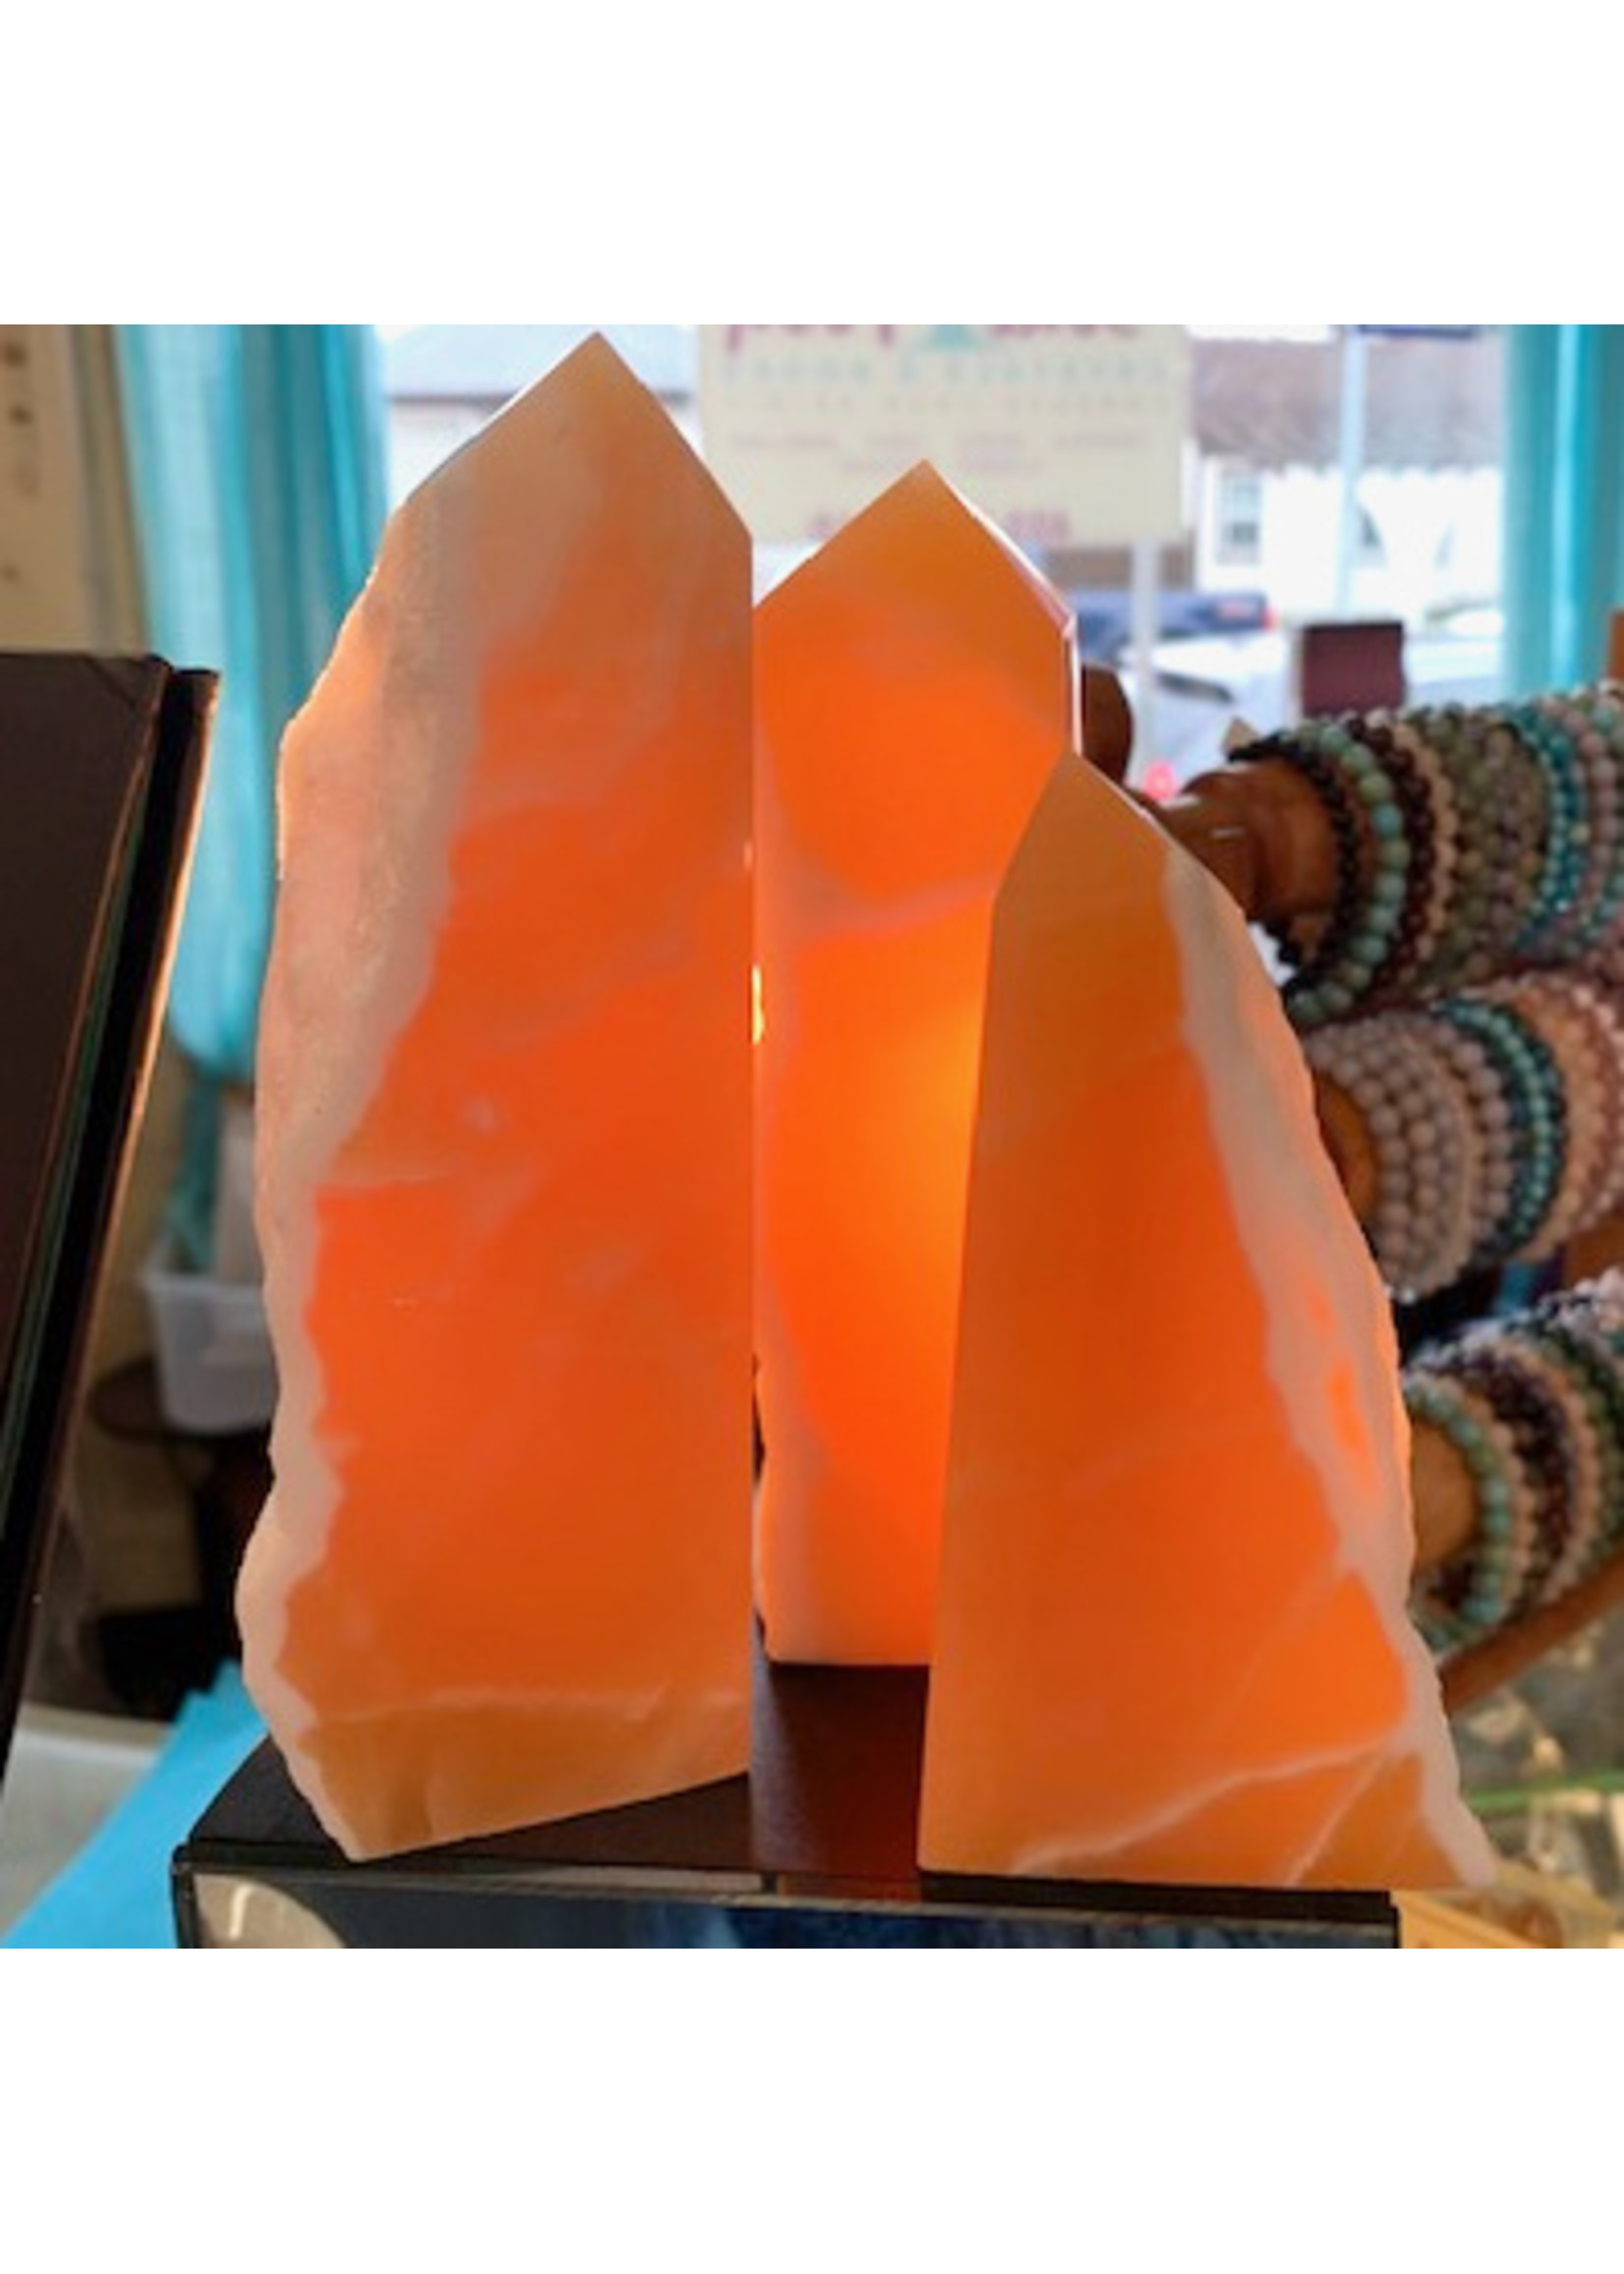 Orange Calcite Obelisks life's juiciness